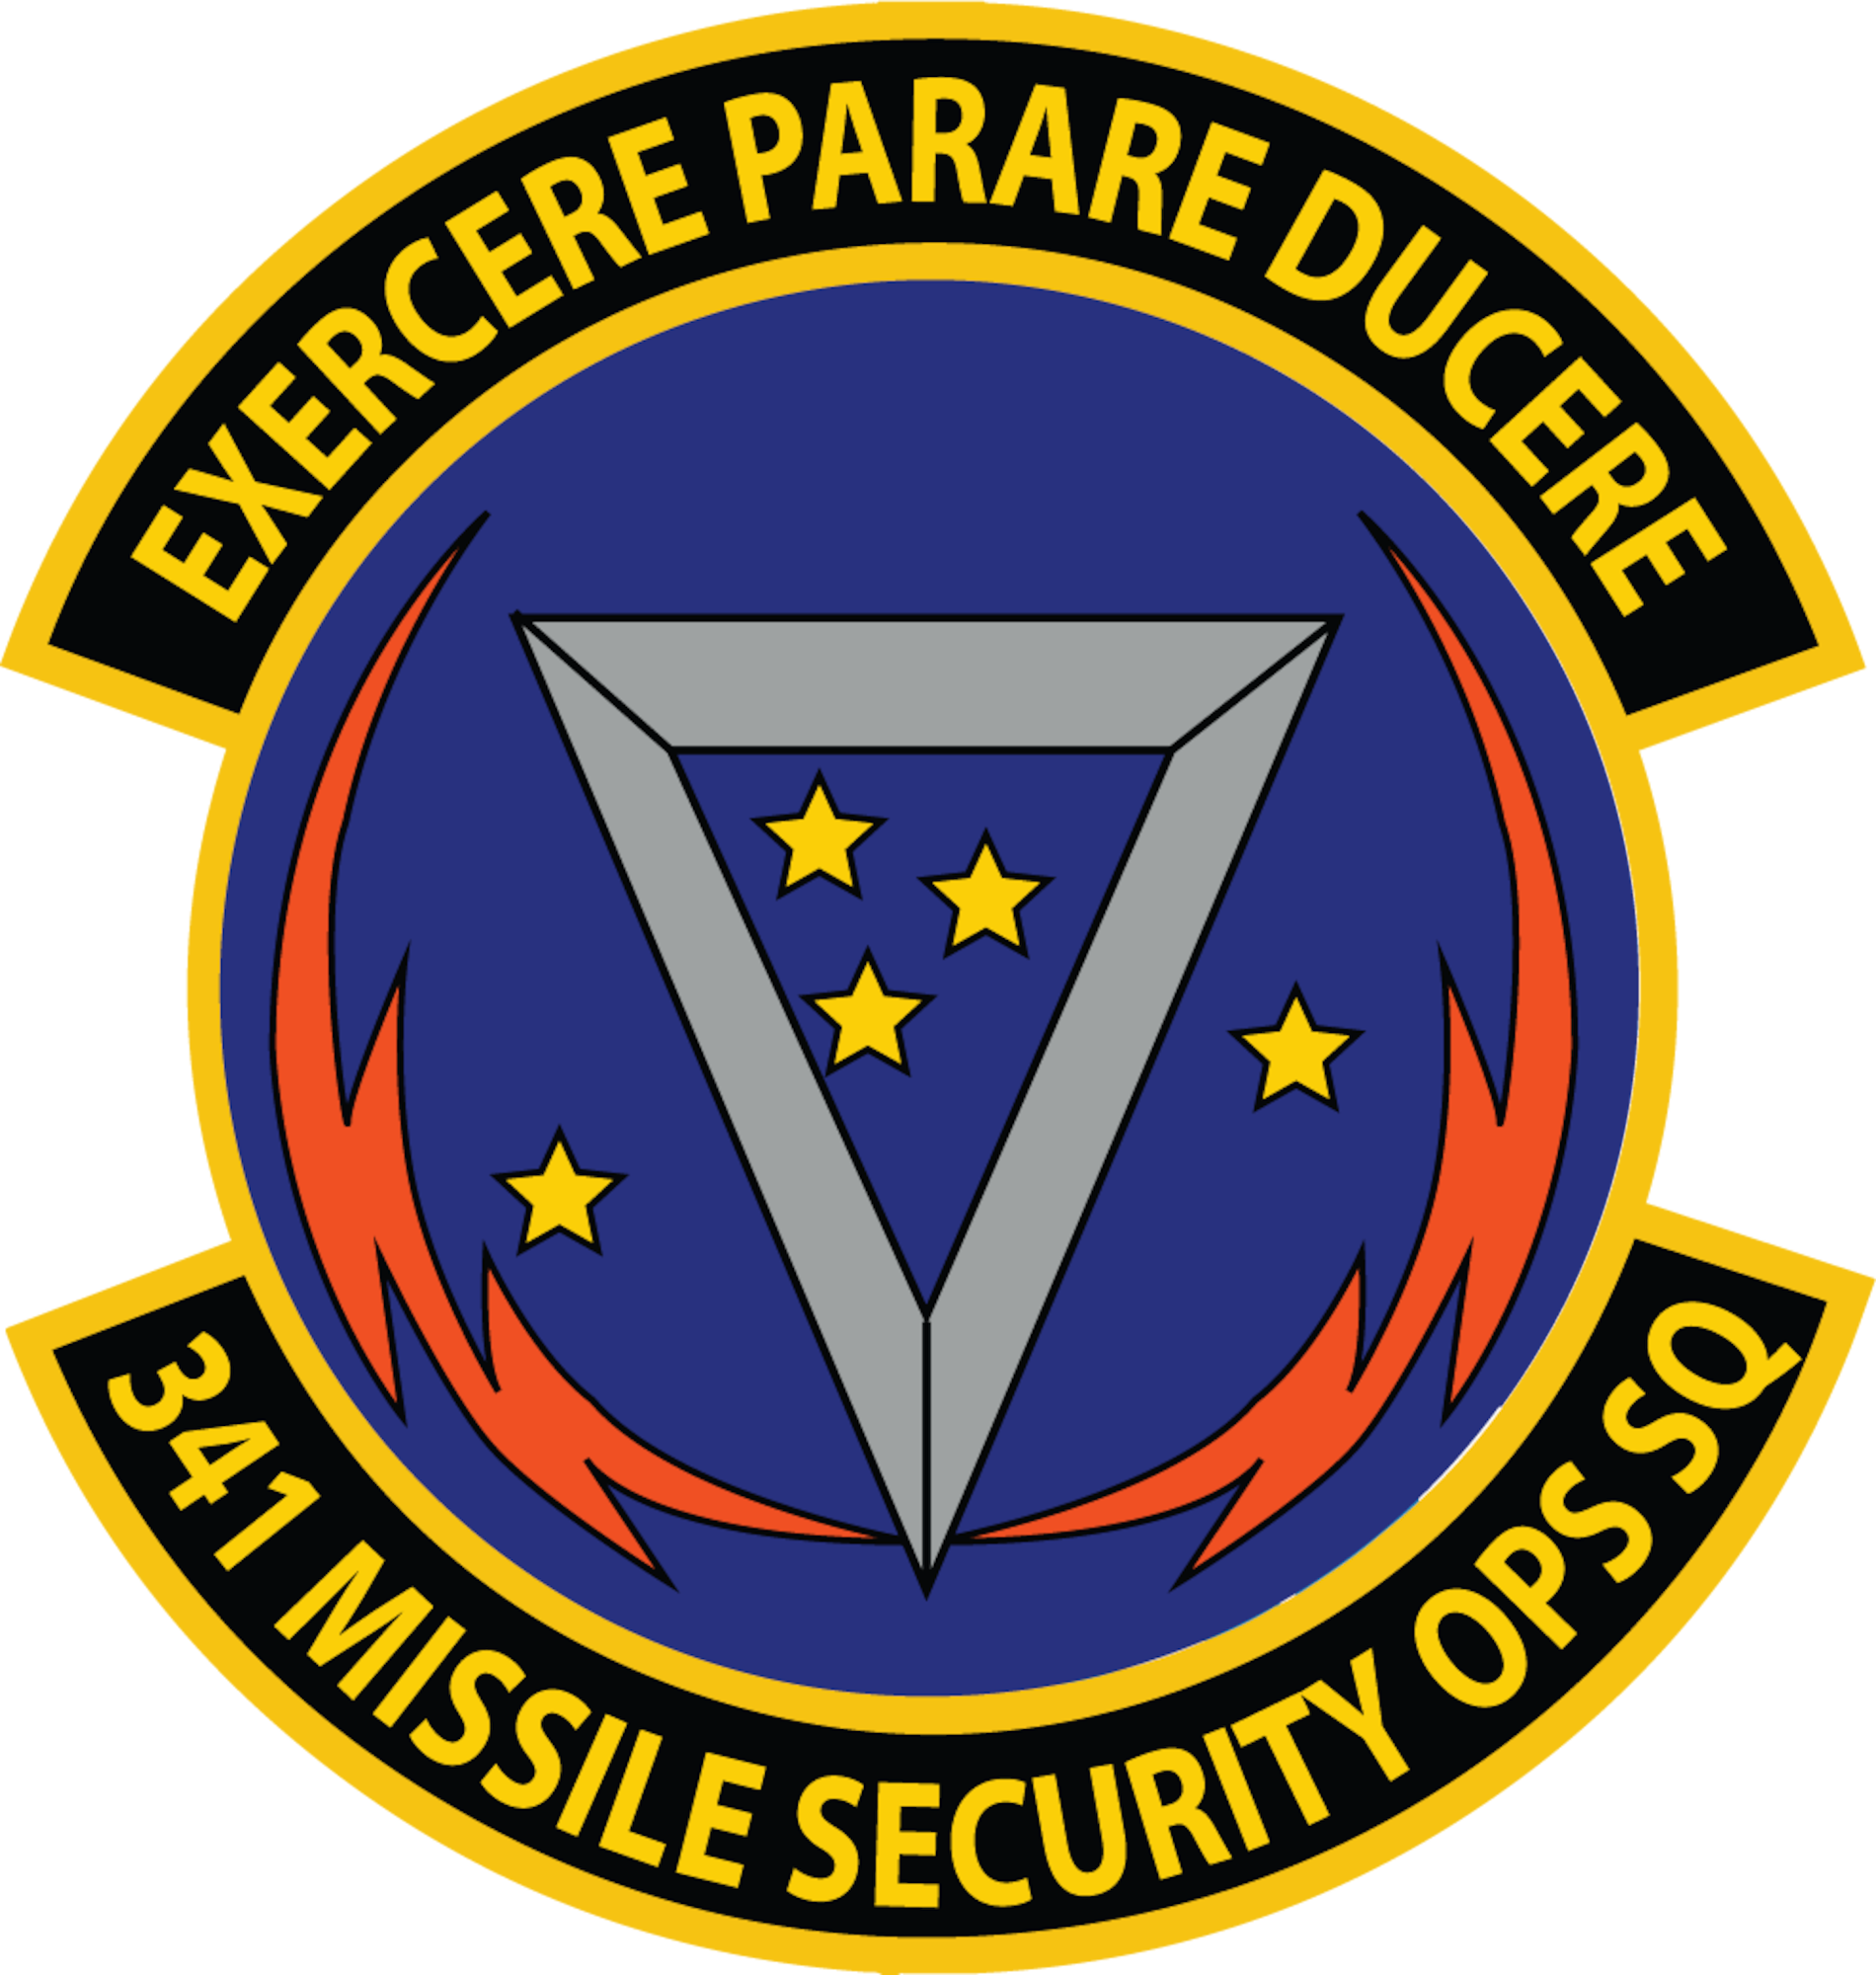 A graphic of a squadron shield